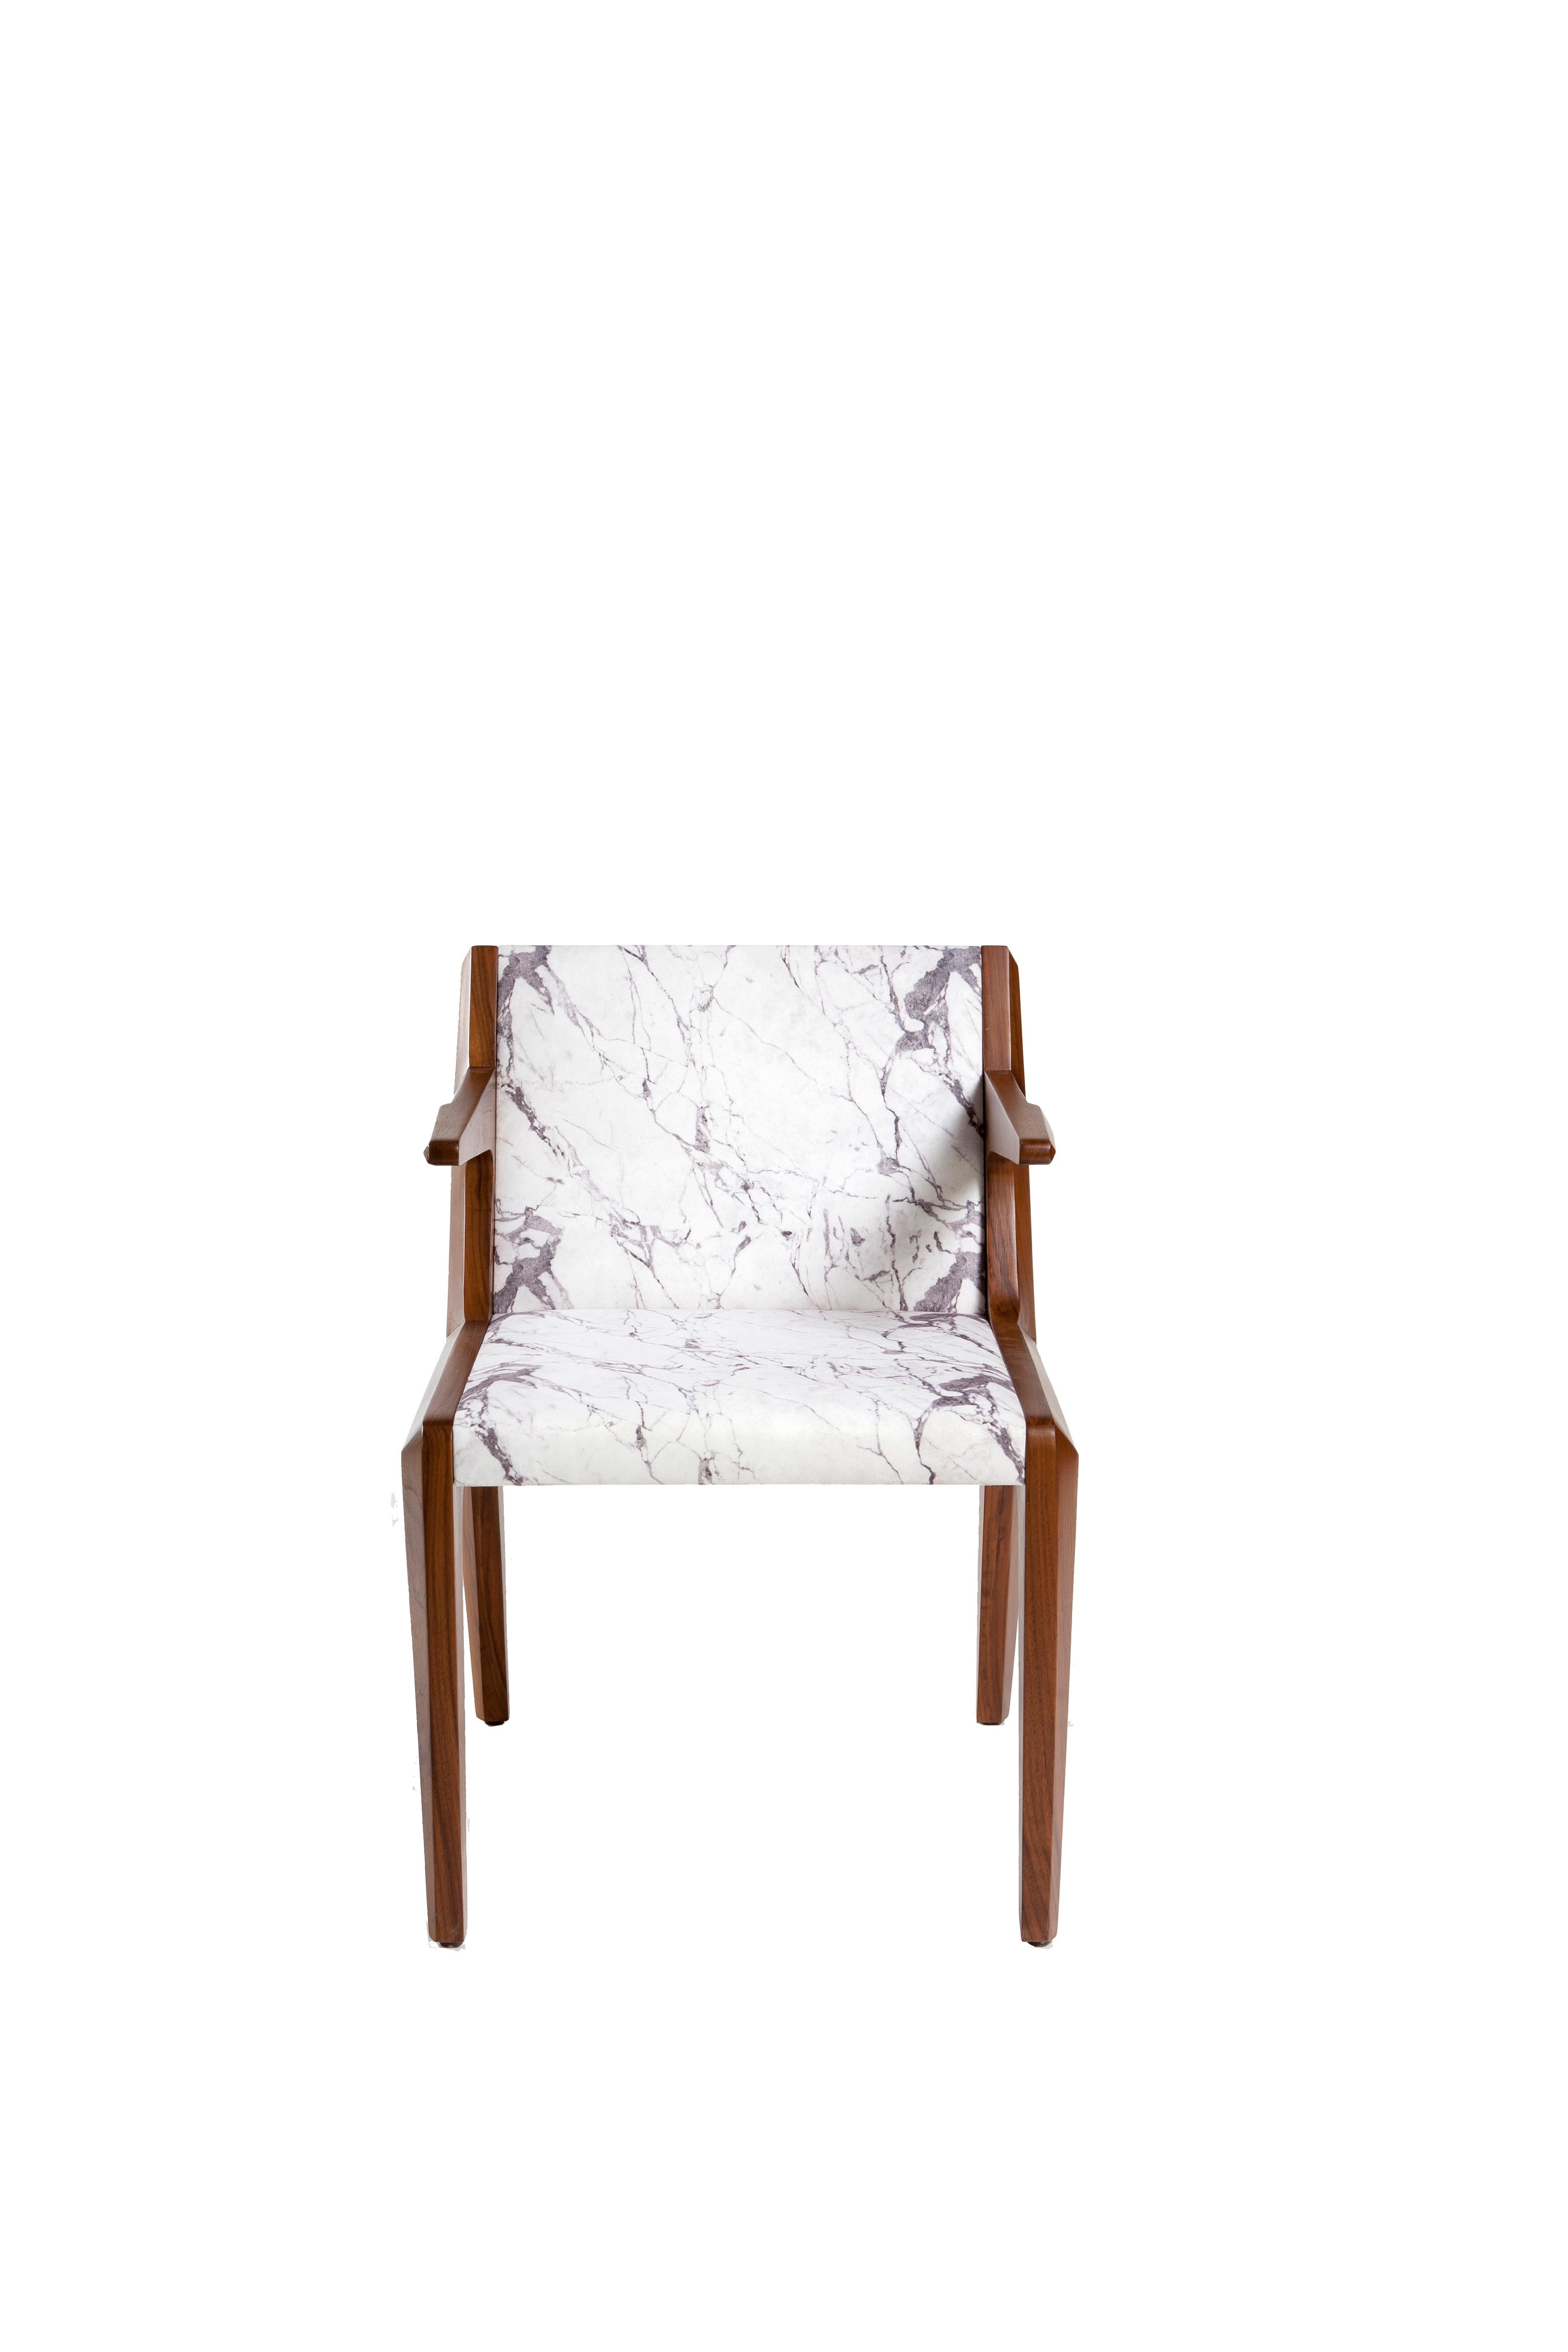 Conçu pour qui veut écrire sa propre Tabula Rasa dans le confort et le style.
Take a seat est l'une des interprétations de chaise de Kontra qui consiste en un corps en noyer ou en chêne massif et un revêtement en cuir.
Chaise de salle à manger,